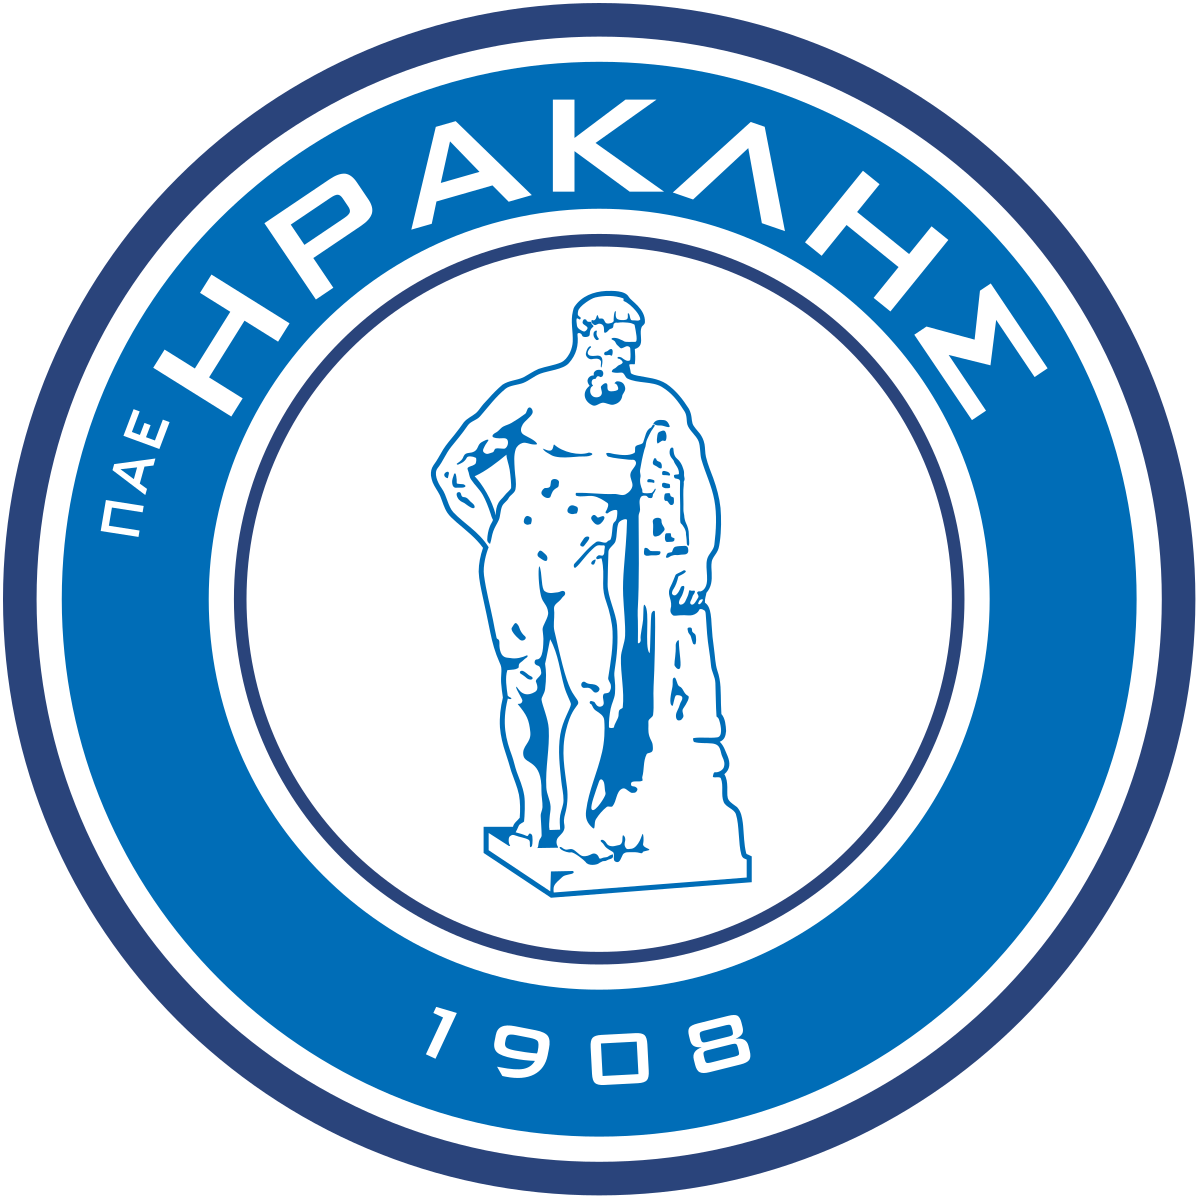 1200px-Iraklis_1908_F.C._logo.svg.png